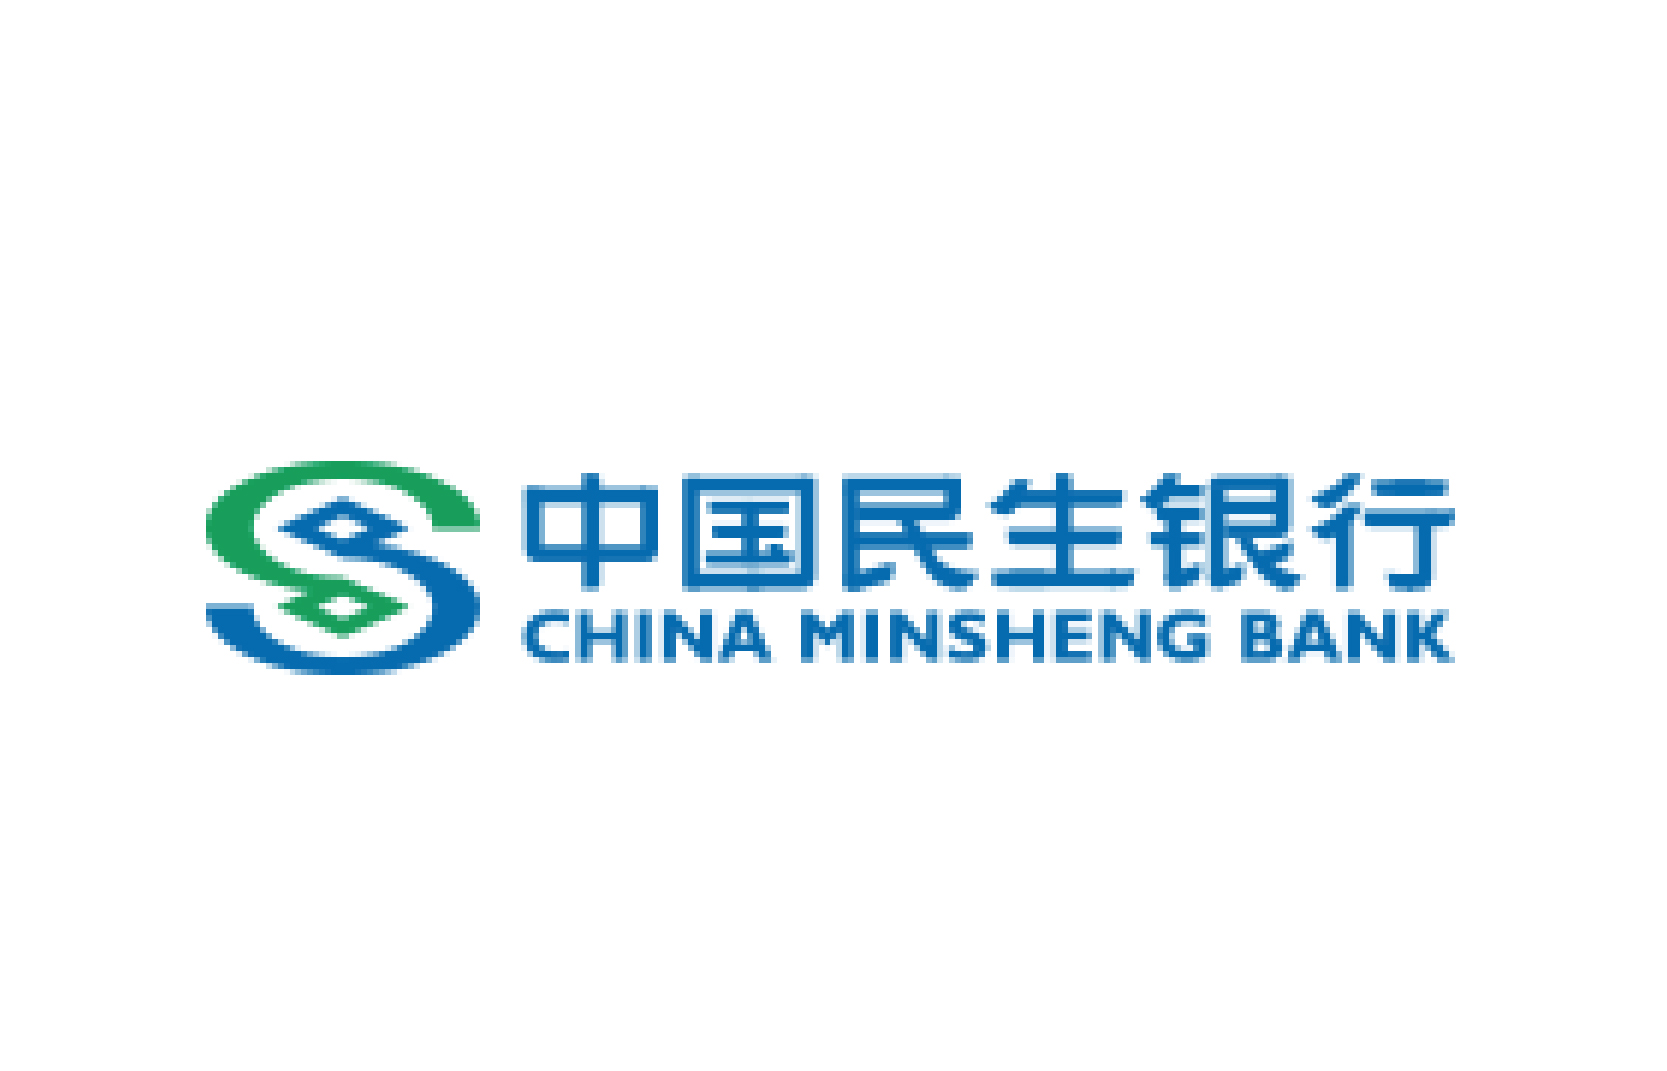 中国民生银行